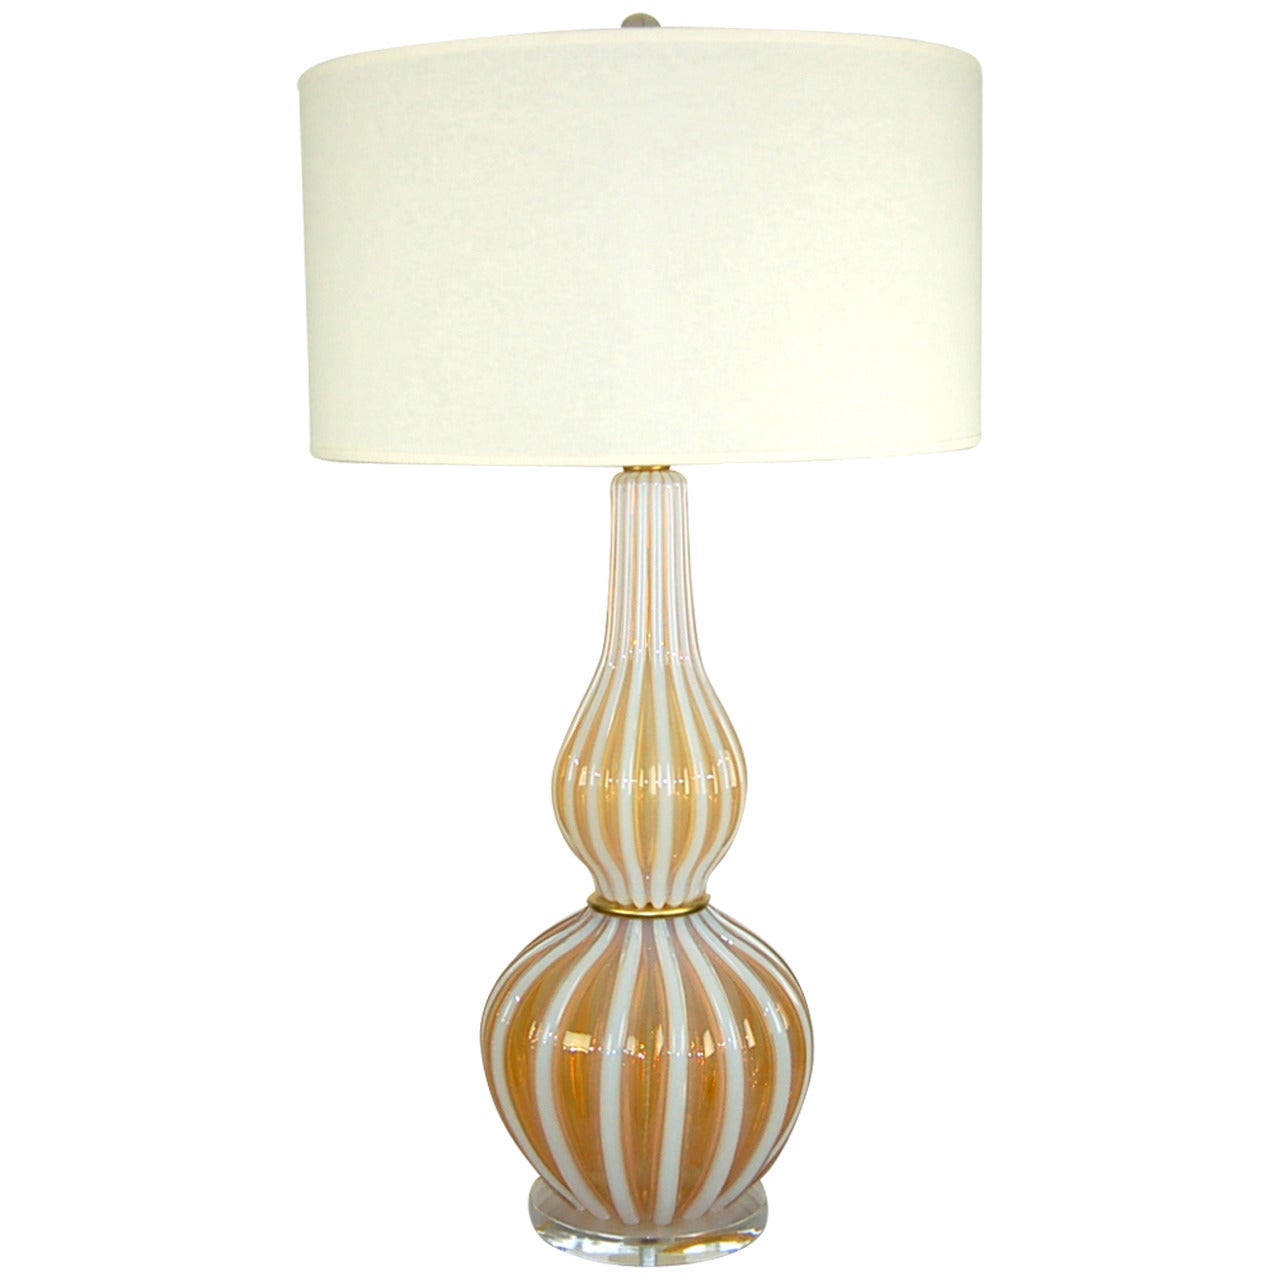 Imposing Vintage Murano Lamp in Peaches and Cream